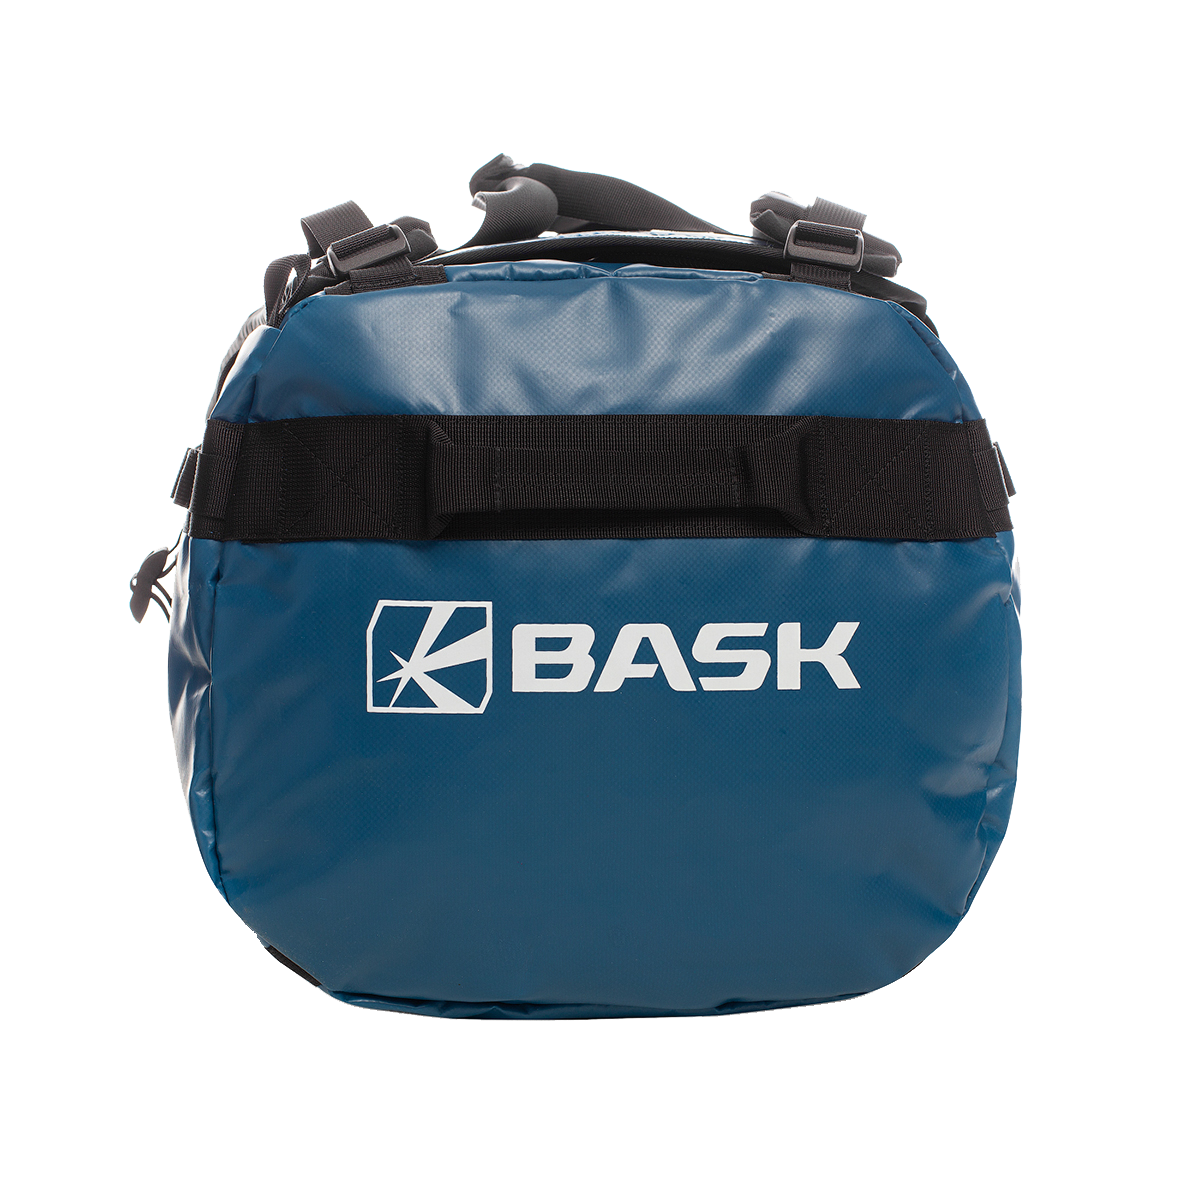 Сумка BASK, цвет синий 2313-9309 Transport 150 v2 - фото 1